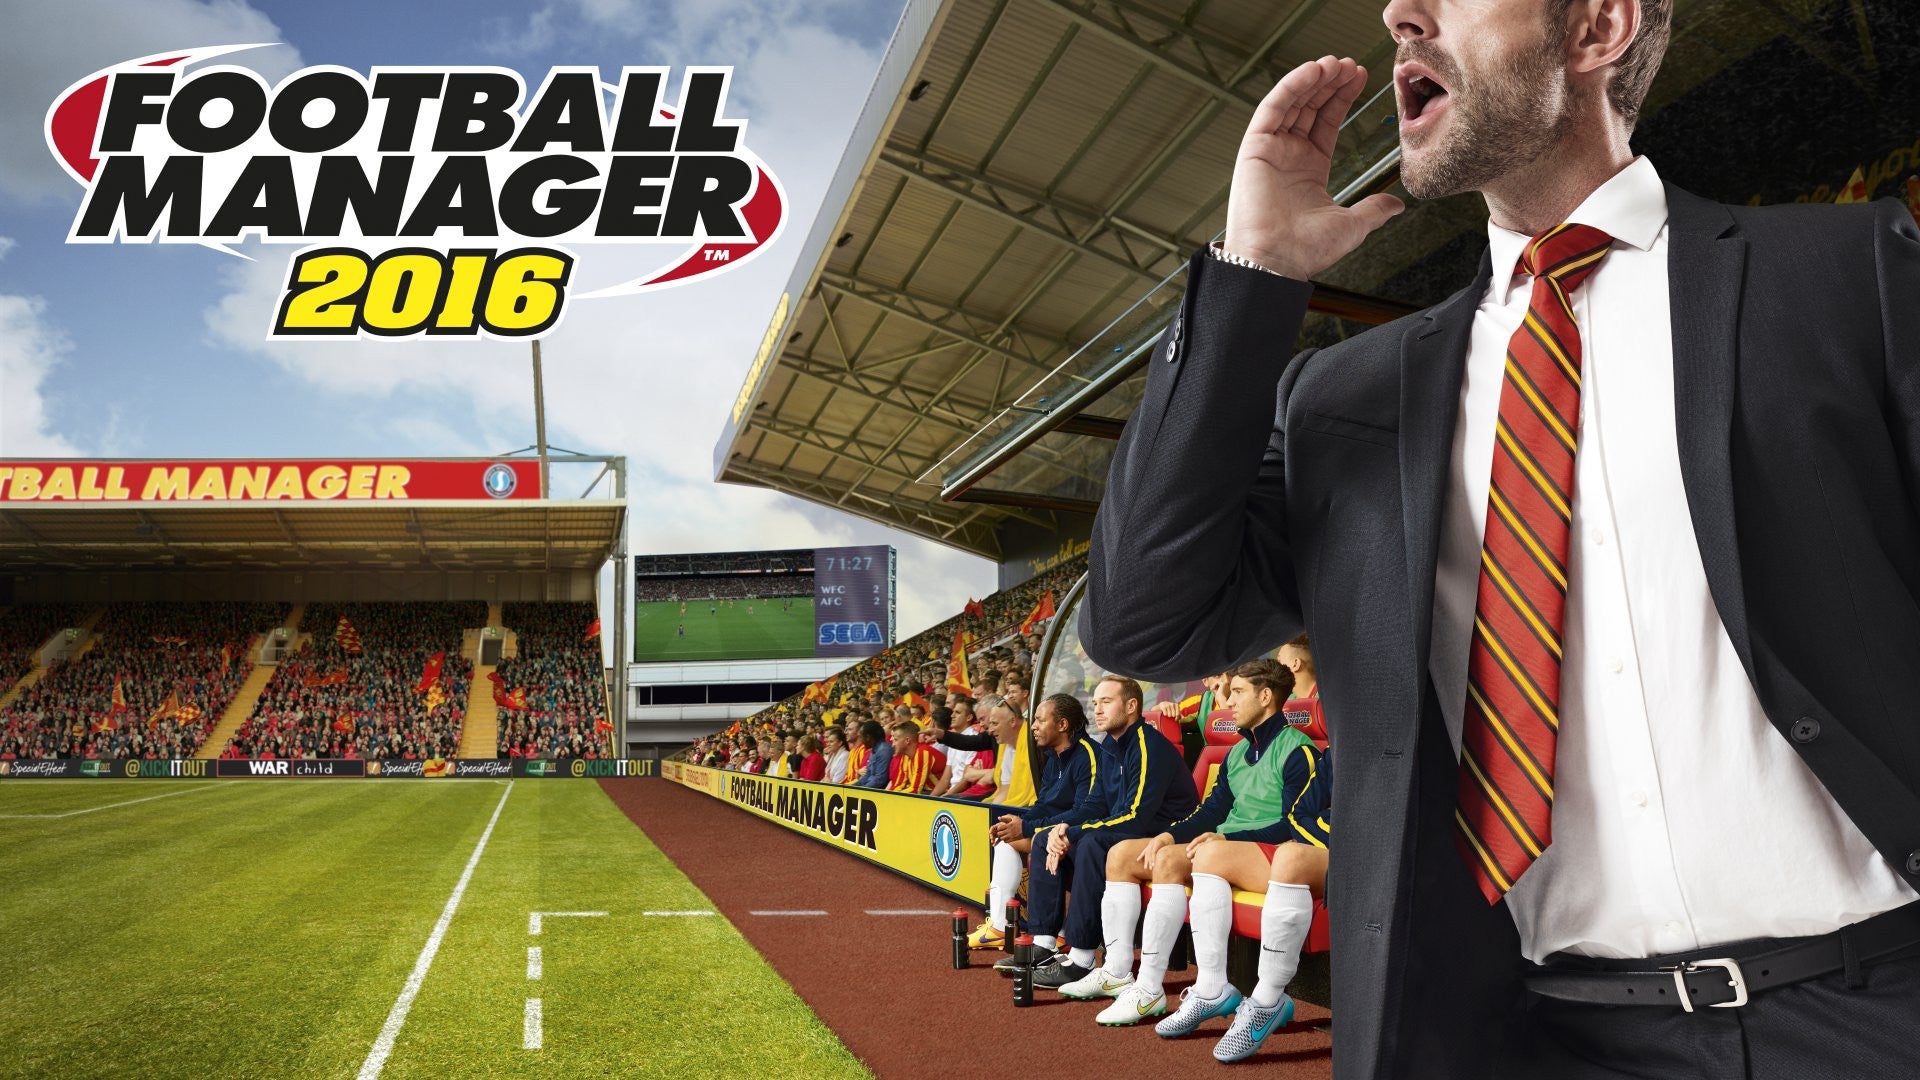 Obrazki dla Football Manager 2016 pozwoli stworzyć własny klub i menedżera